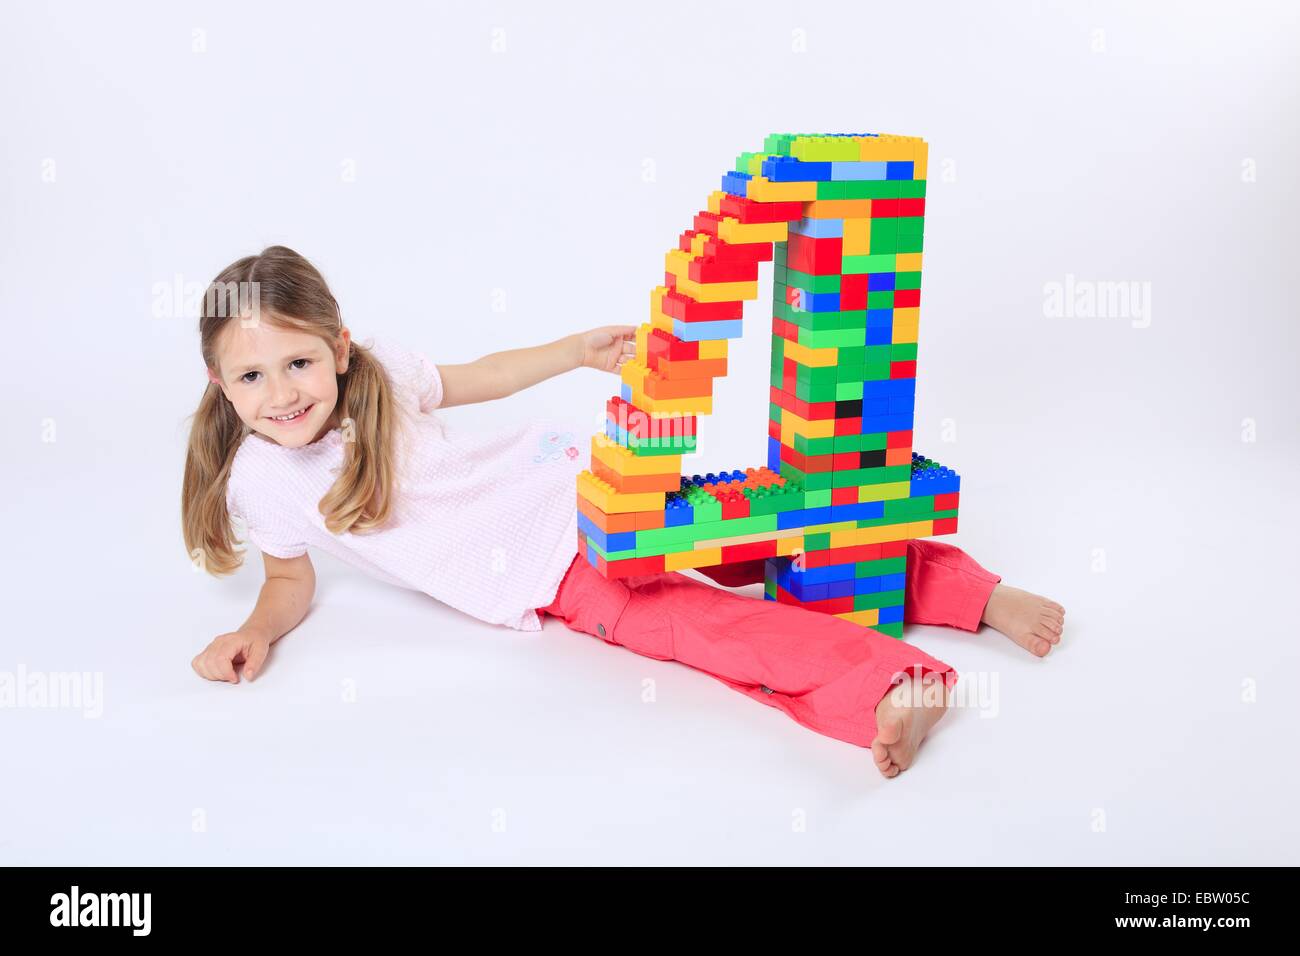 vier-jährigen Mädchen mit einer großen Zahl "4" aus Legosteinen gebaut Stockfoto